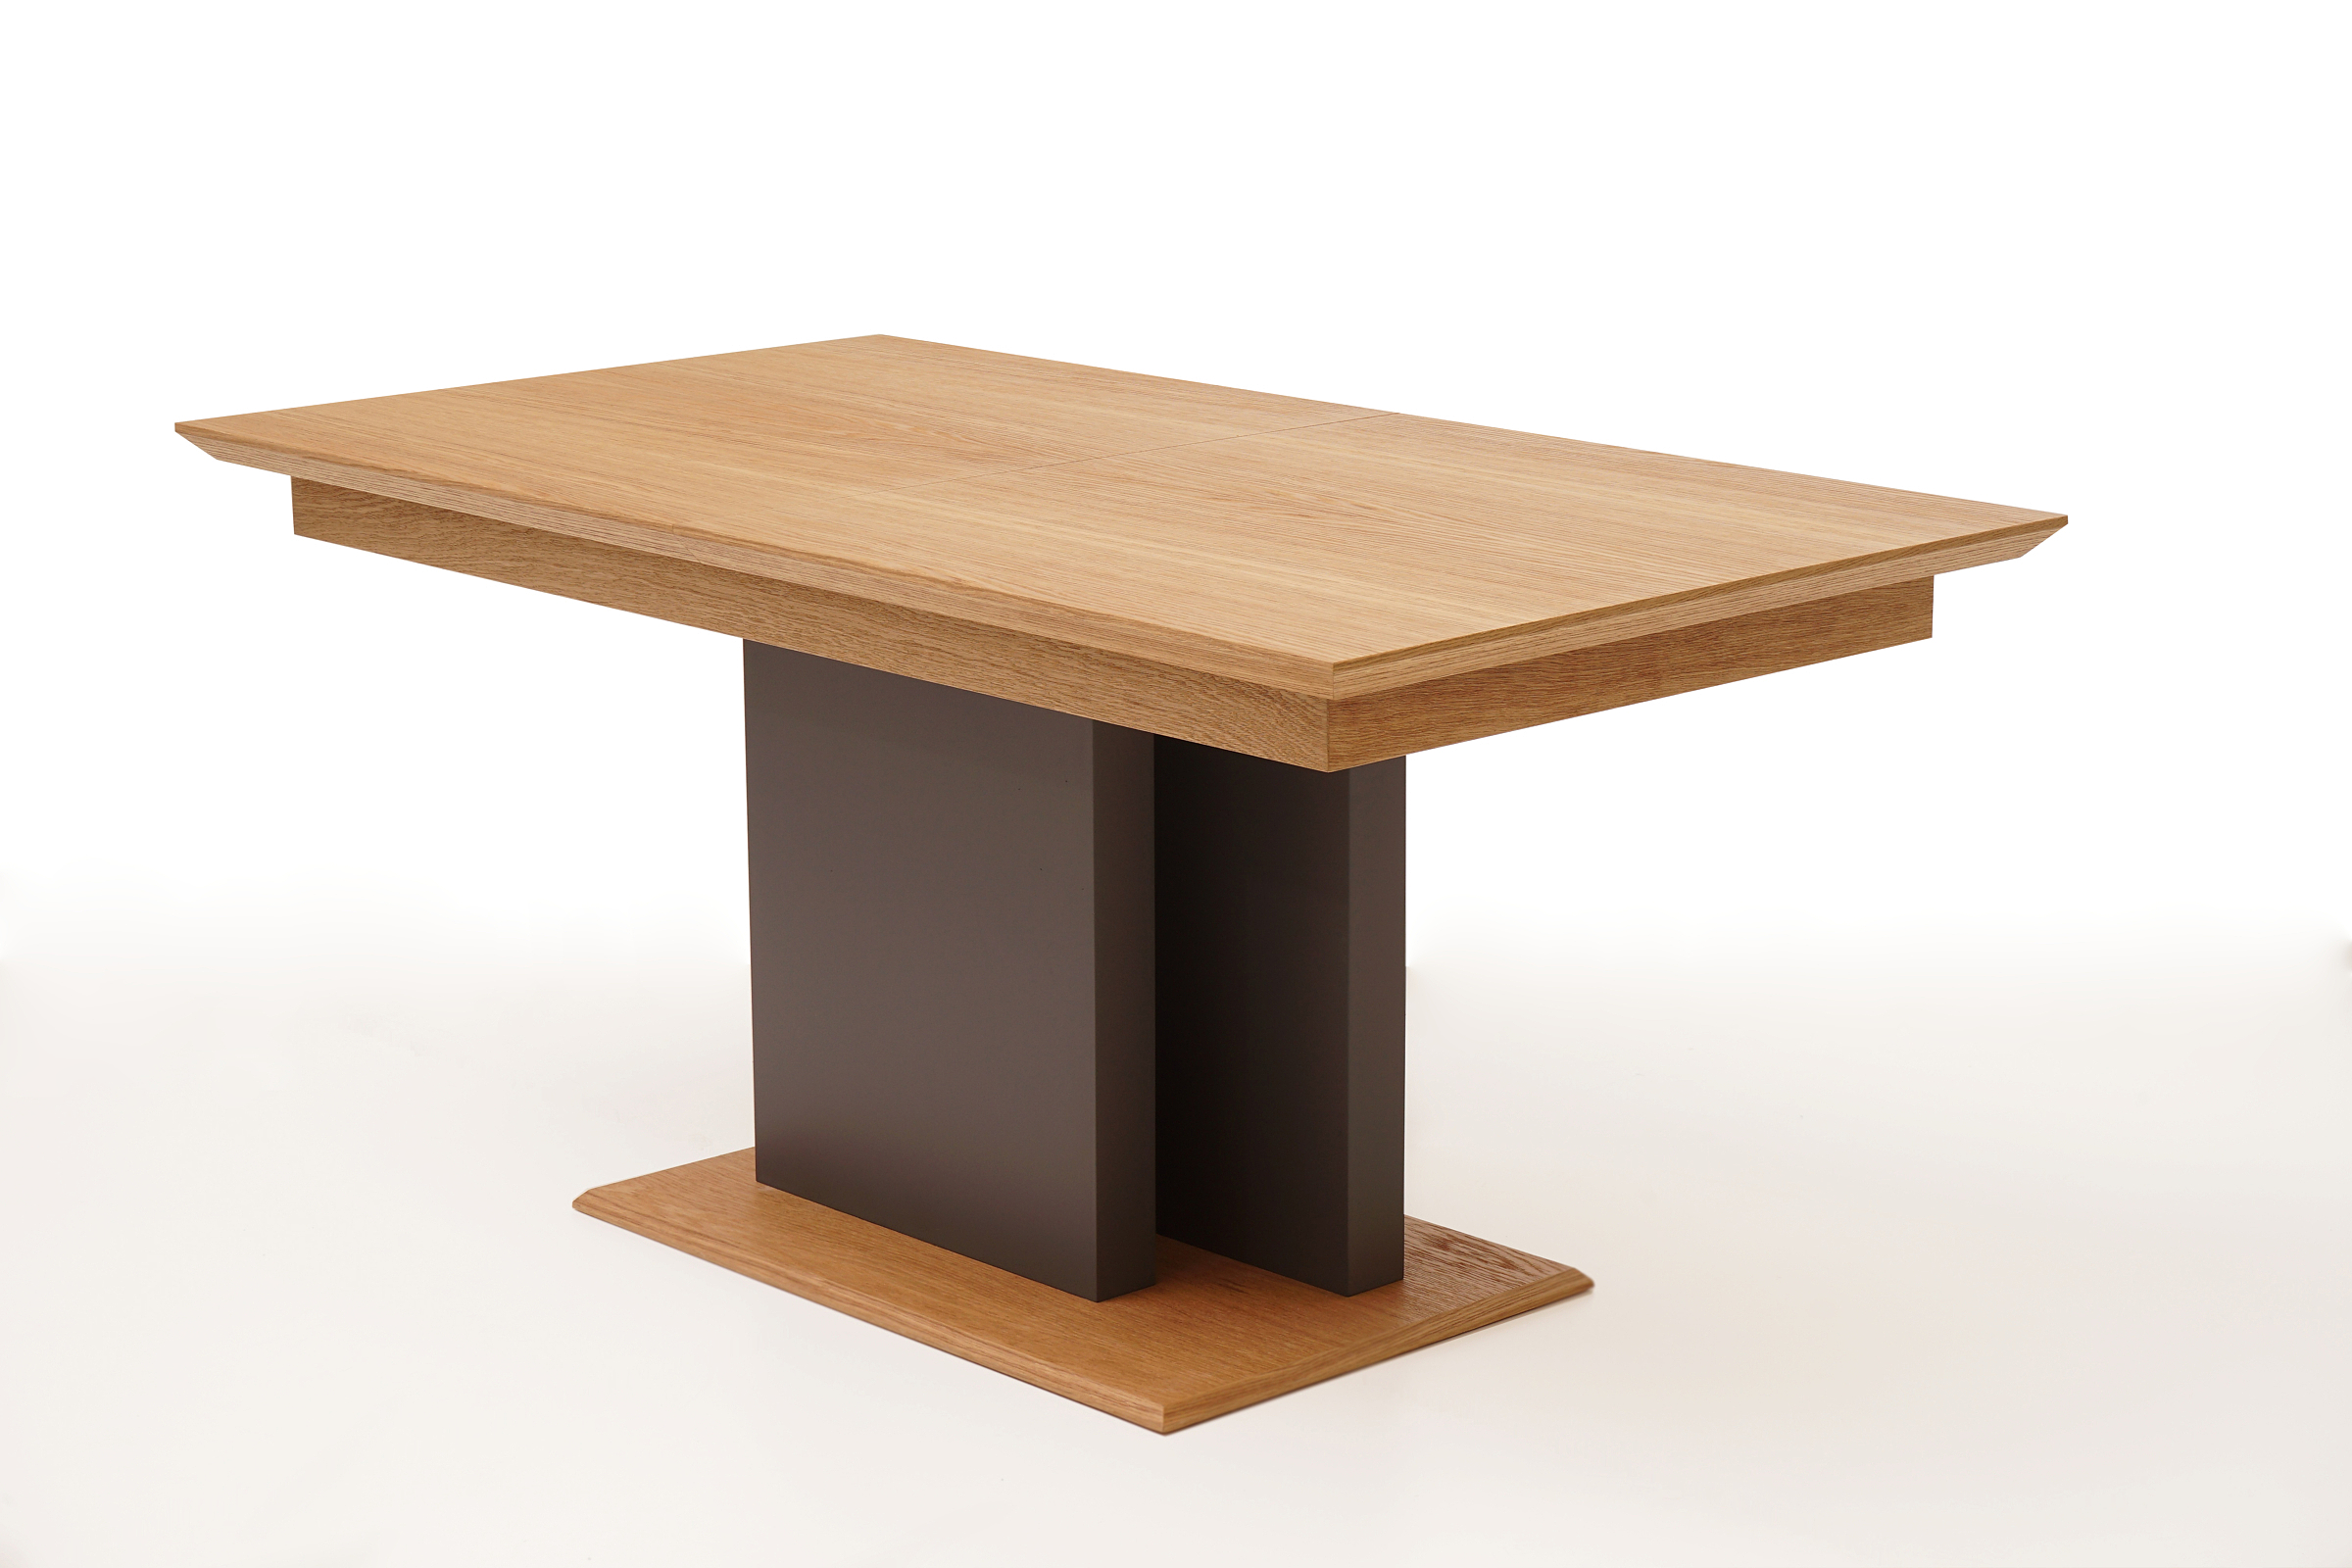 Paris nowoczesny stół w stylu Modern na podstawie i jednej nodze